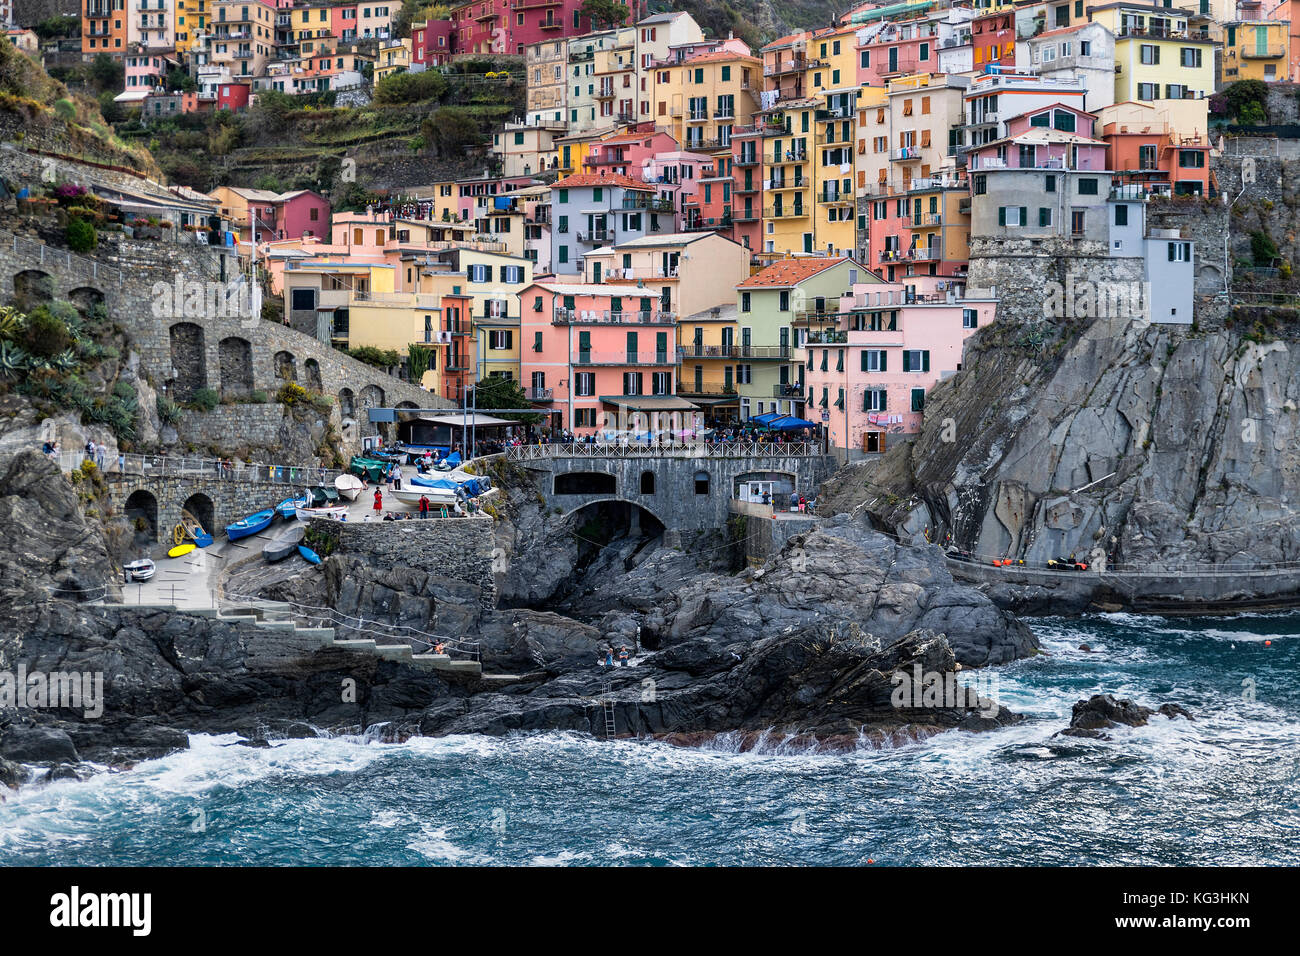 Charming coastal village, Riomaggiore, Cinque Terre, Italy. Stock Photo